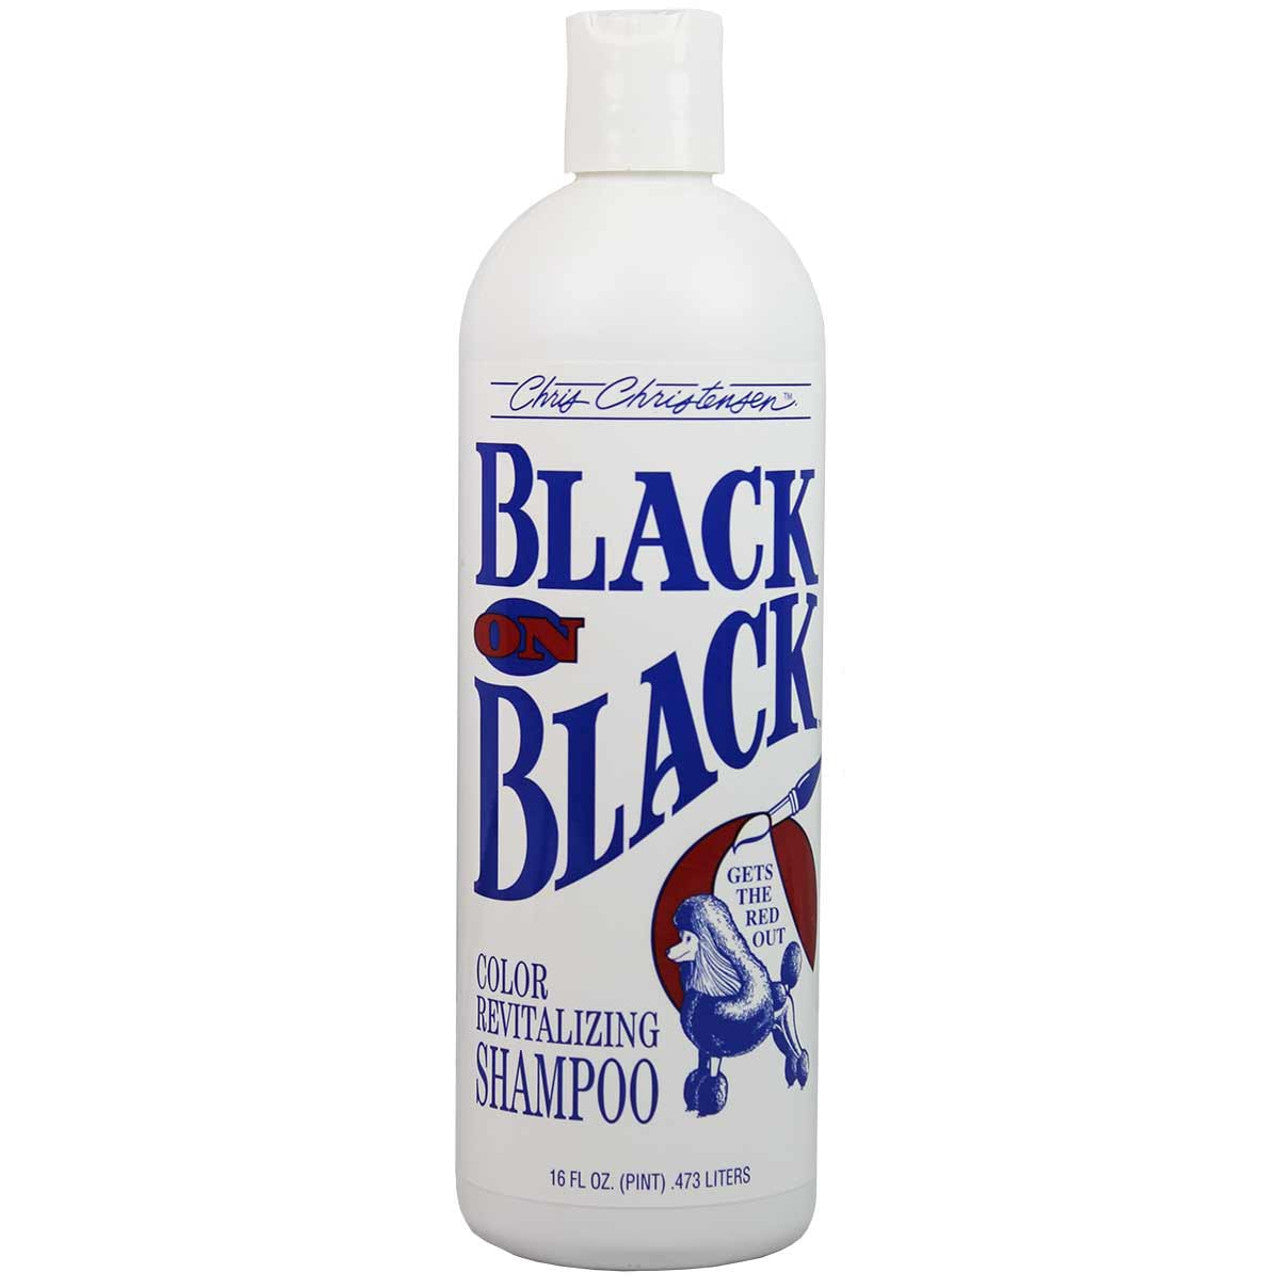 Chris Christensen Black on Black Shampoo, Farbintensivierendes Shampoo Hund und Katze, 473 ml